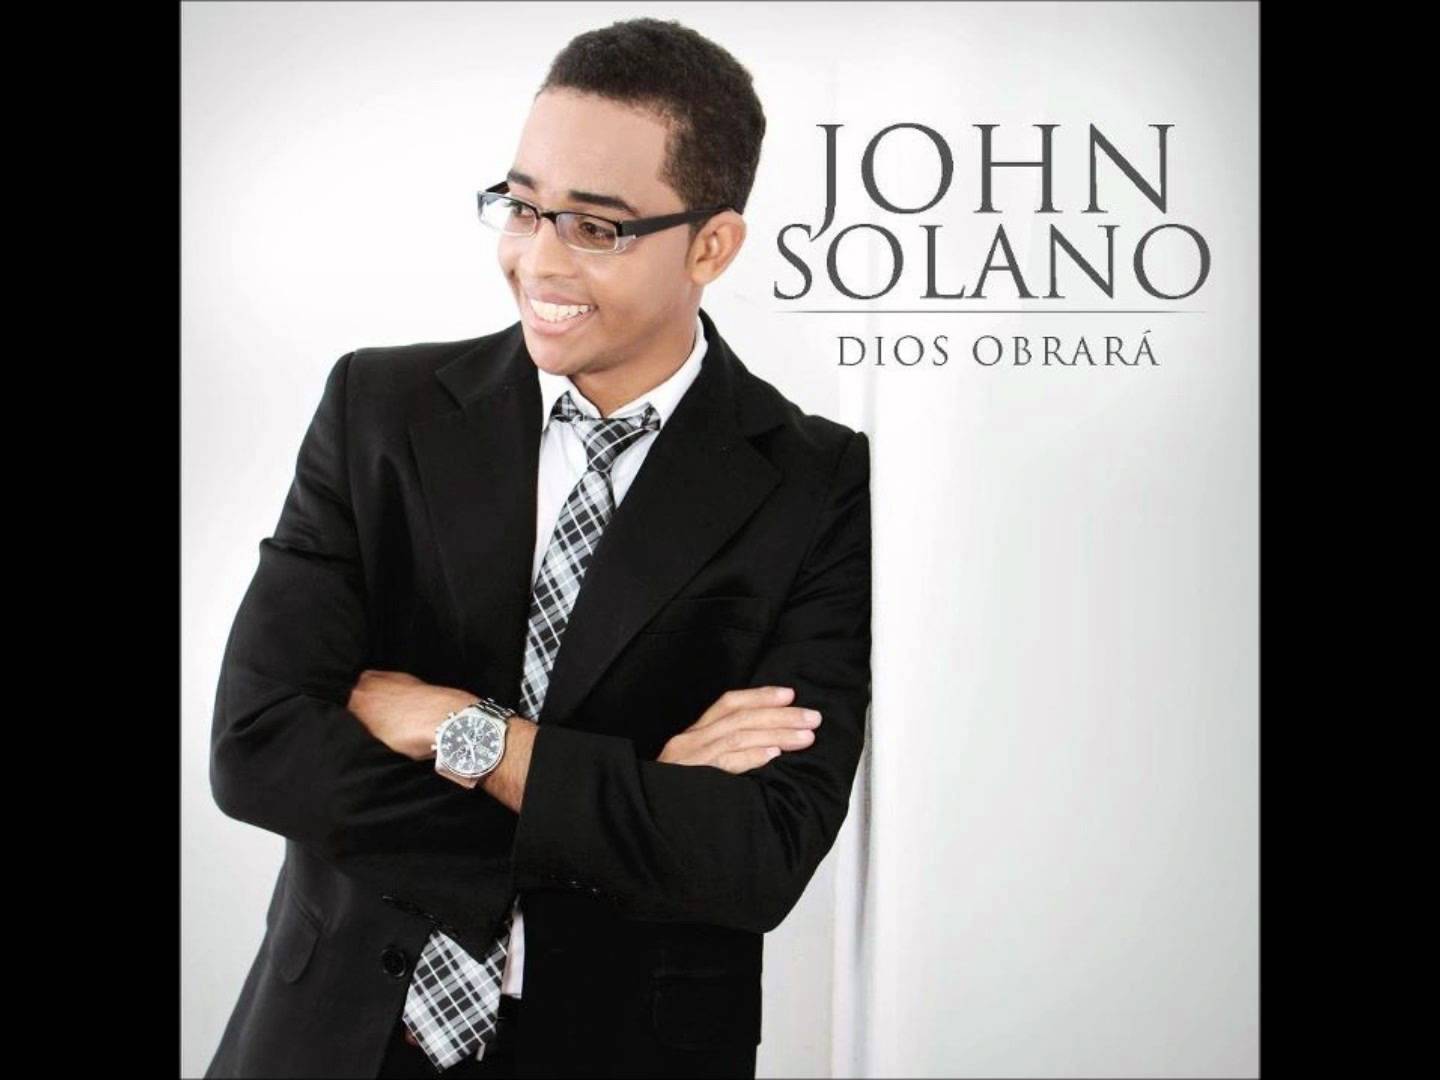 John Solano